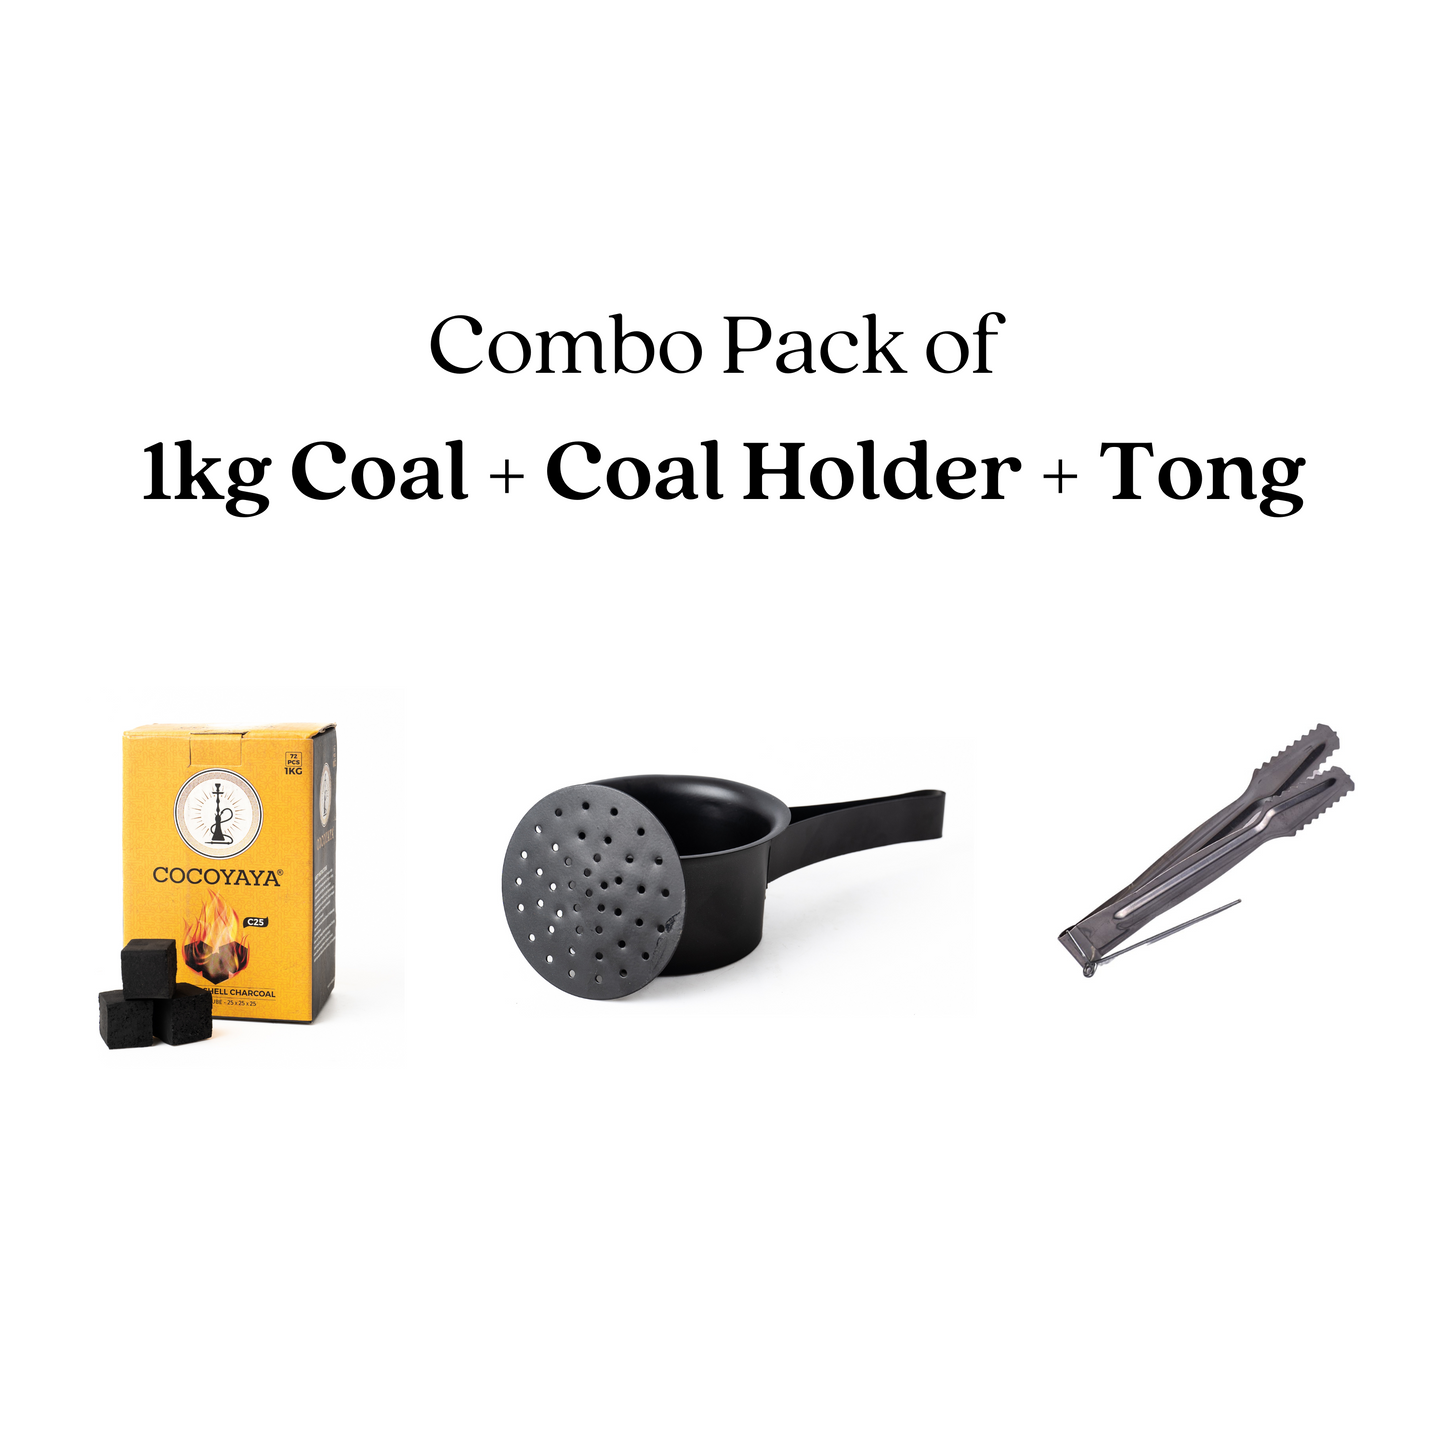 Coconut Coal 1kg + Coal Holder + Tong